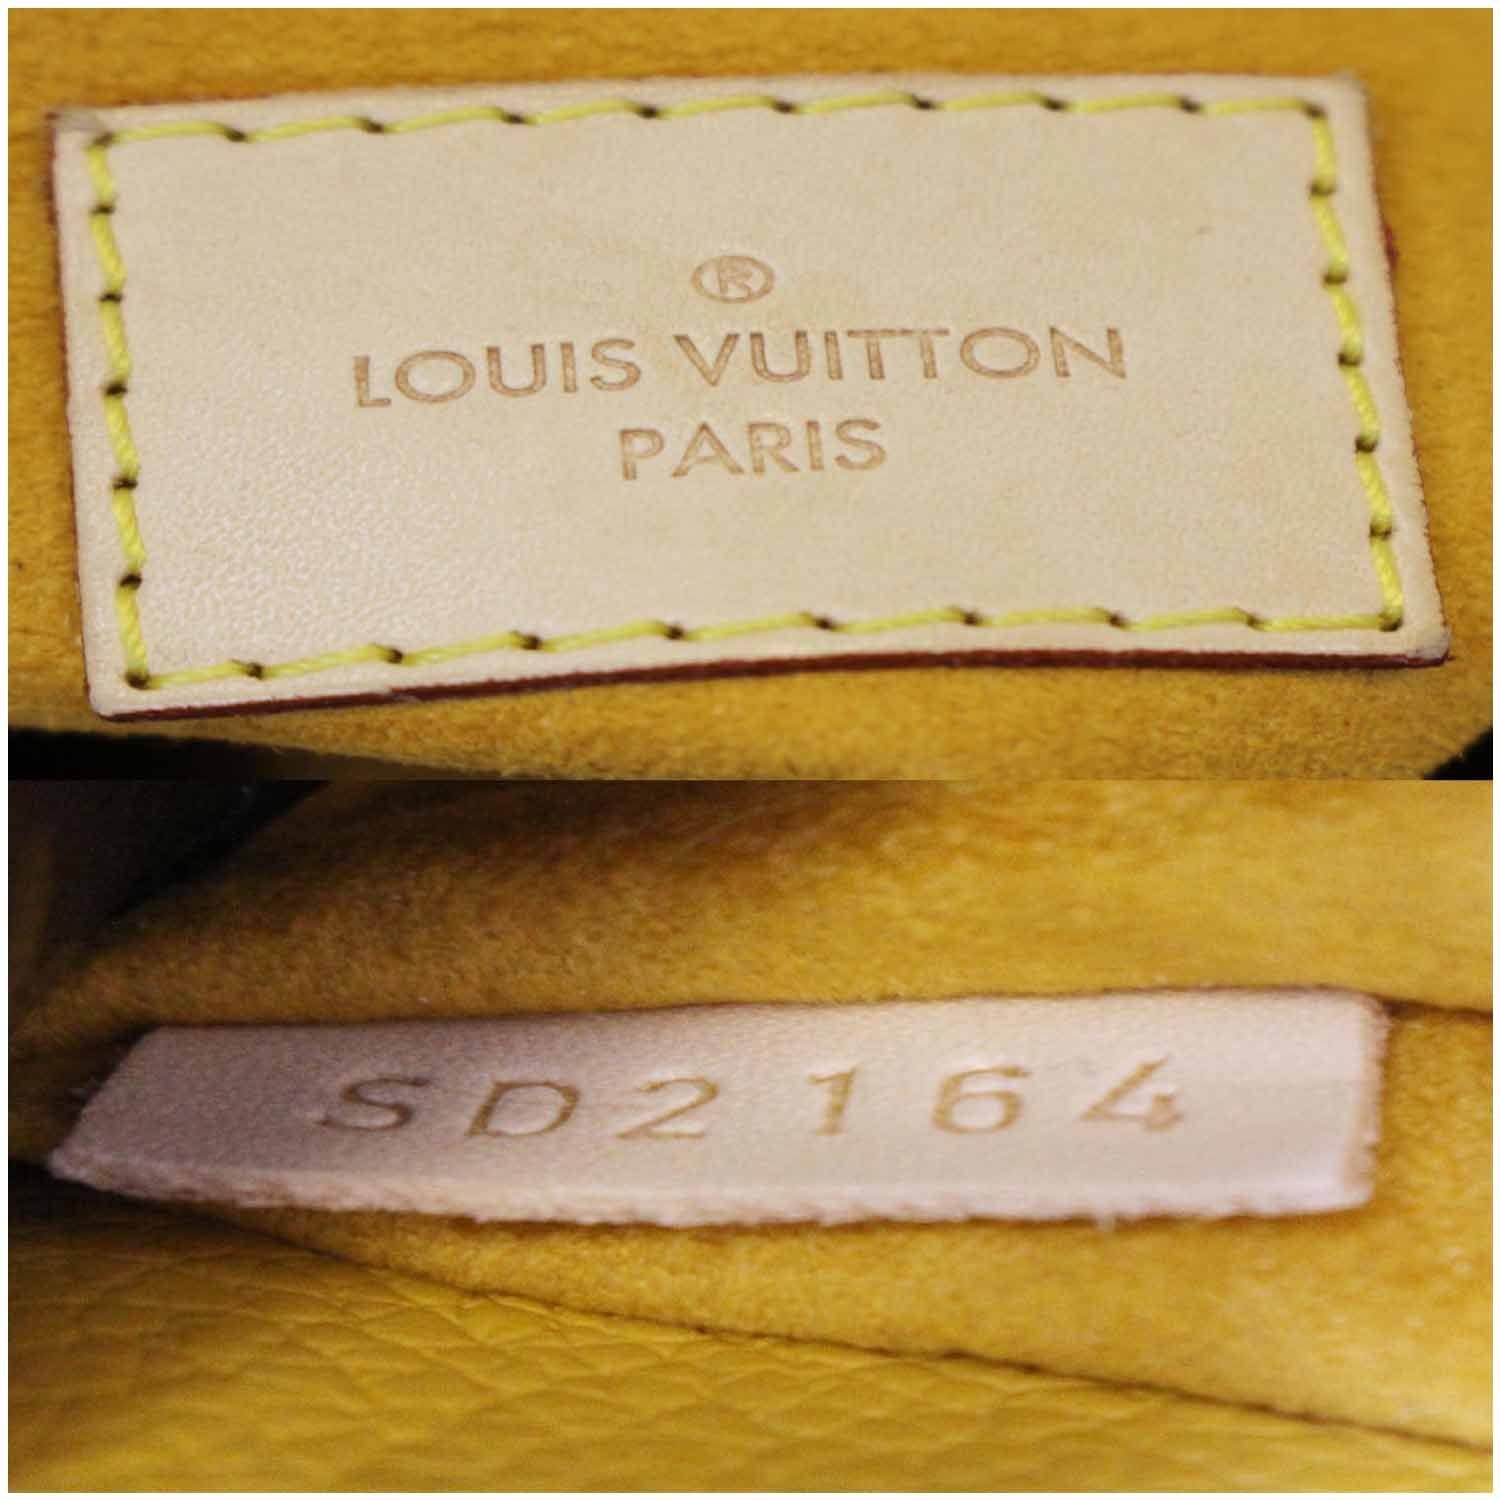 Date Code & Stamp] Louis Vuitton Pallas